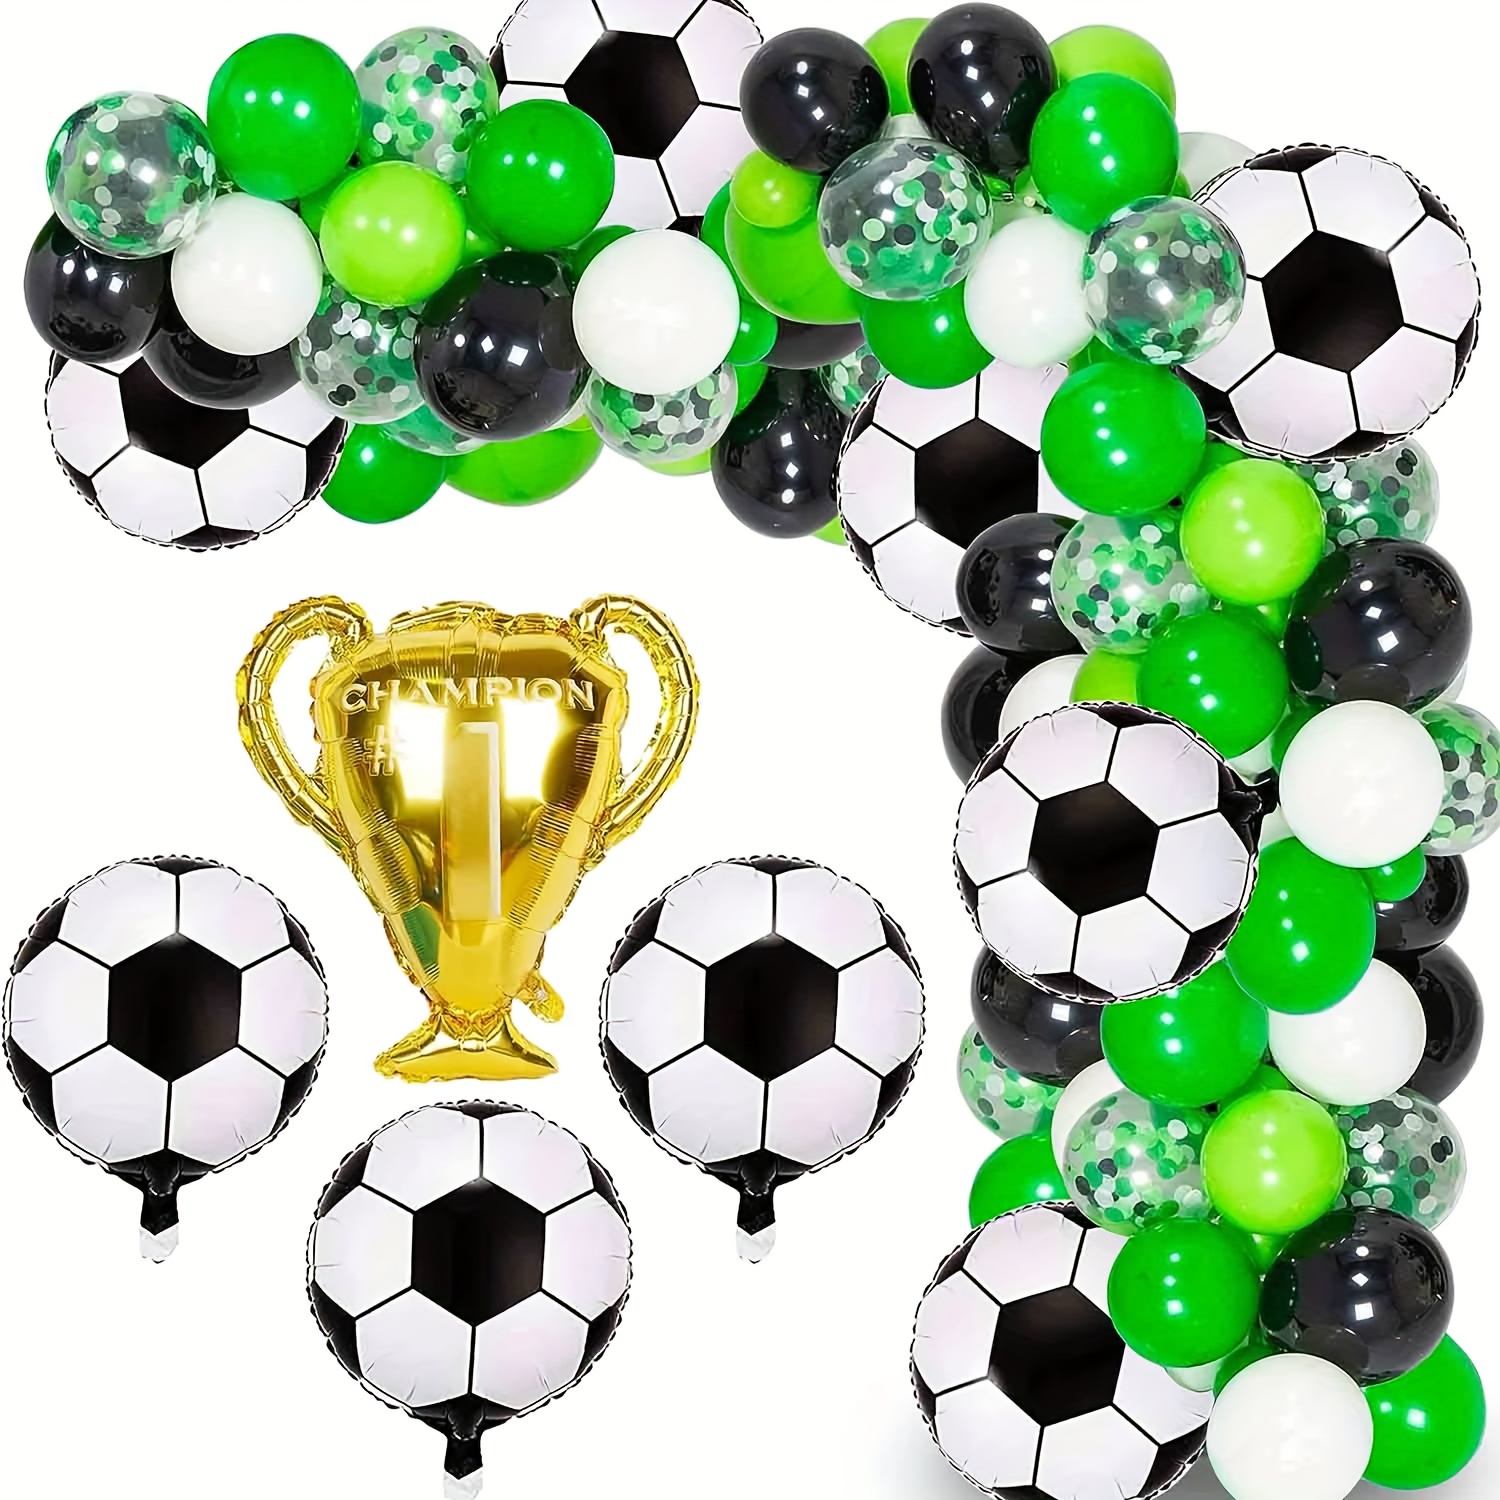 Globos de fútbol de 12 pulgadas, globos de látex para fútbol, globos de  látex con temática de fútbol, globos de fiesta deportiva para deportes